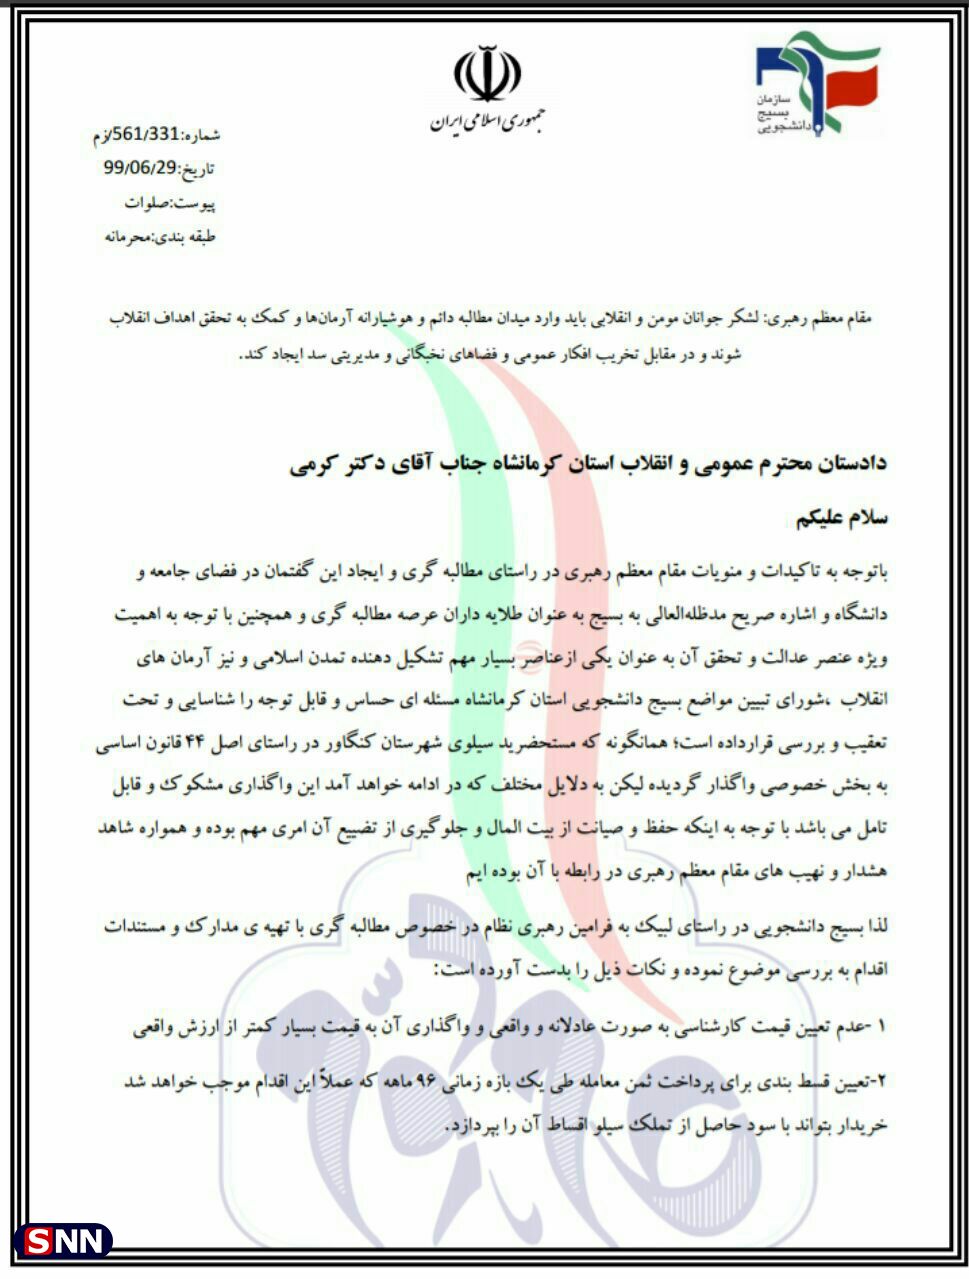 //شورای تبیین مواضع بسیج دانشجویی کرمانشاه پیگیر اجرای عدالت در جریان واگذاری سیلوی کنگاور است